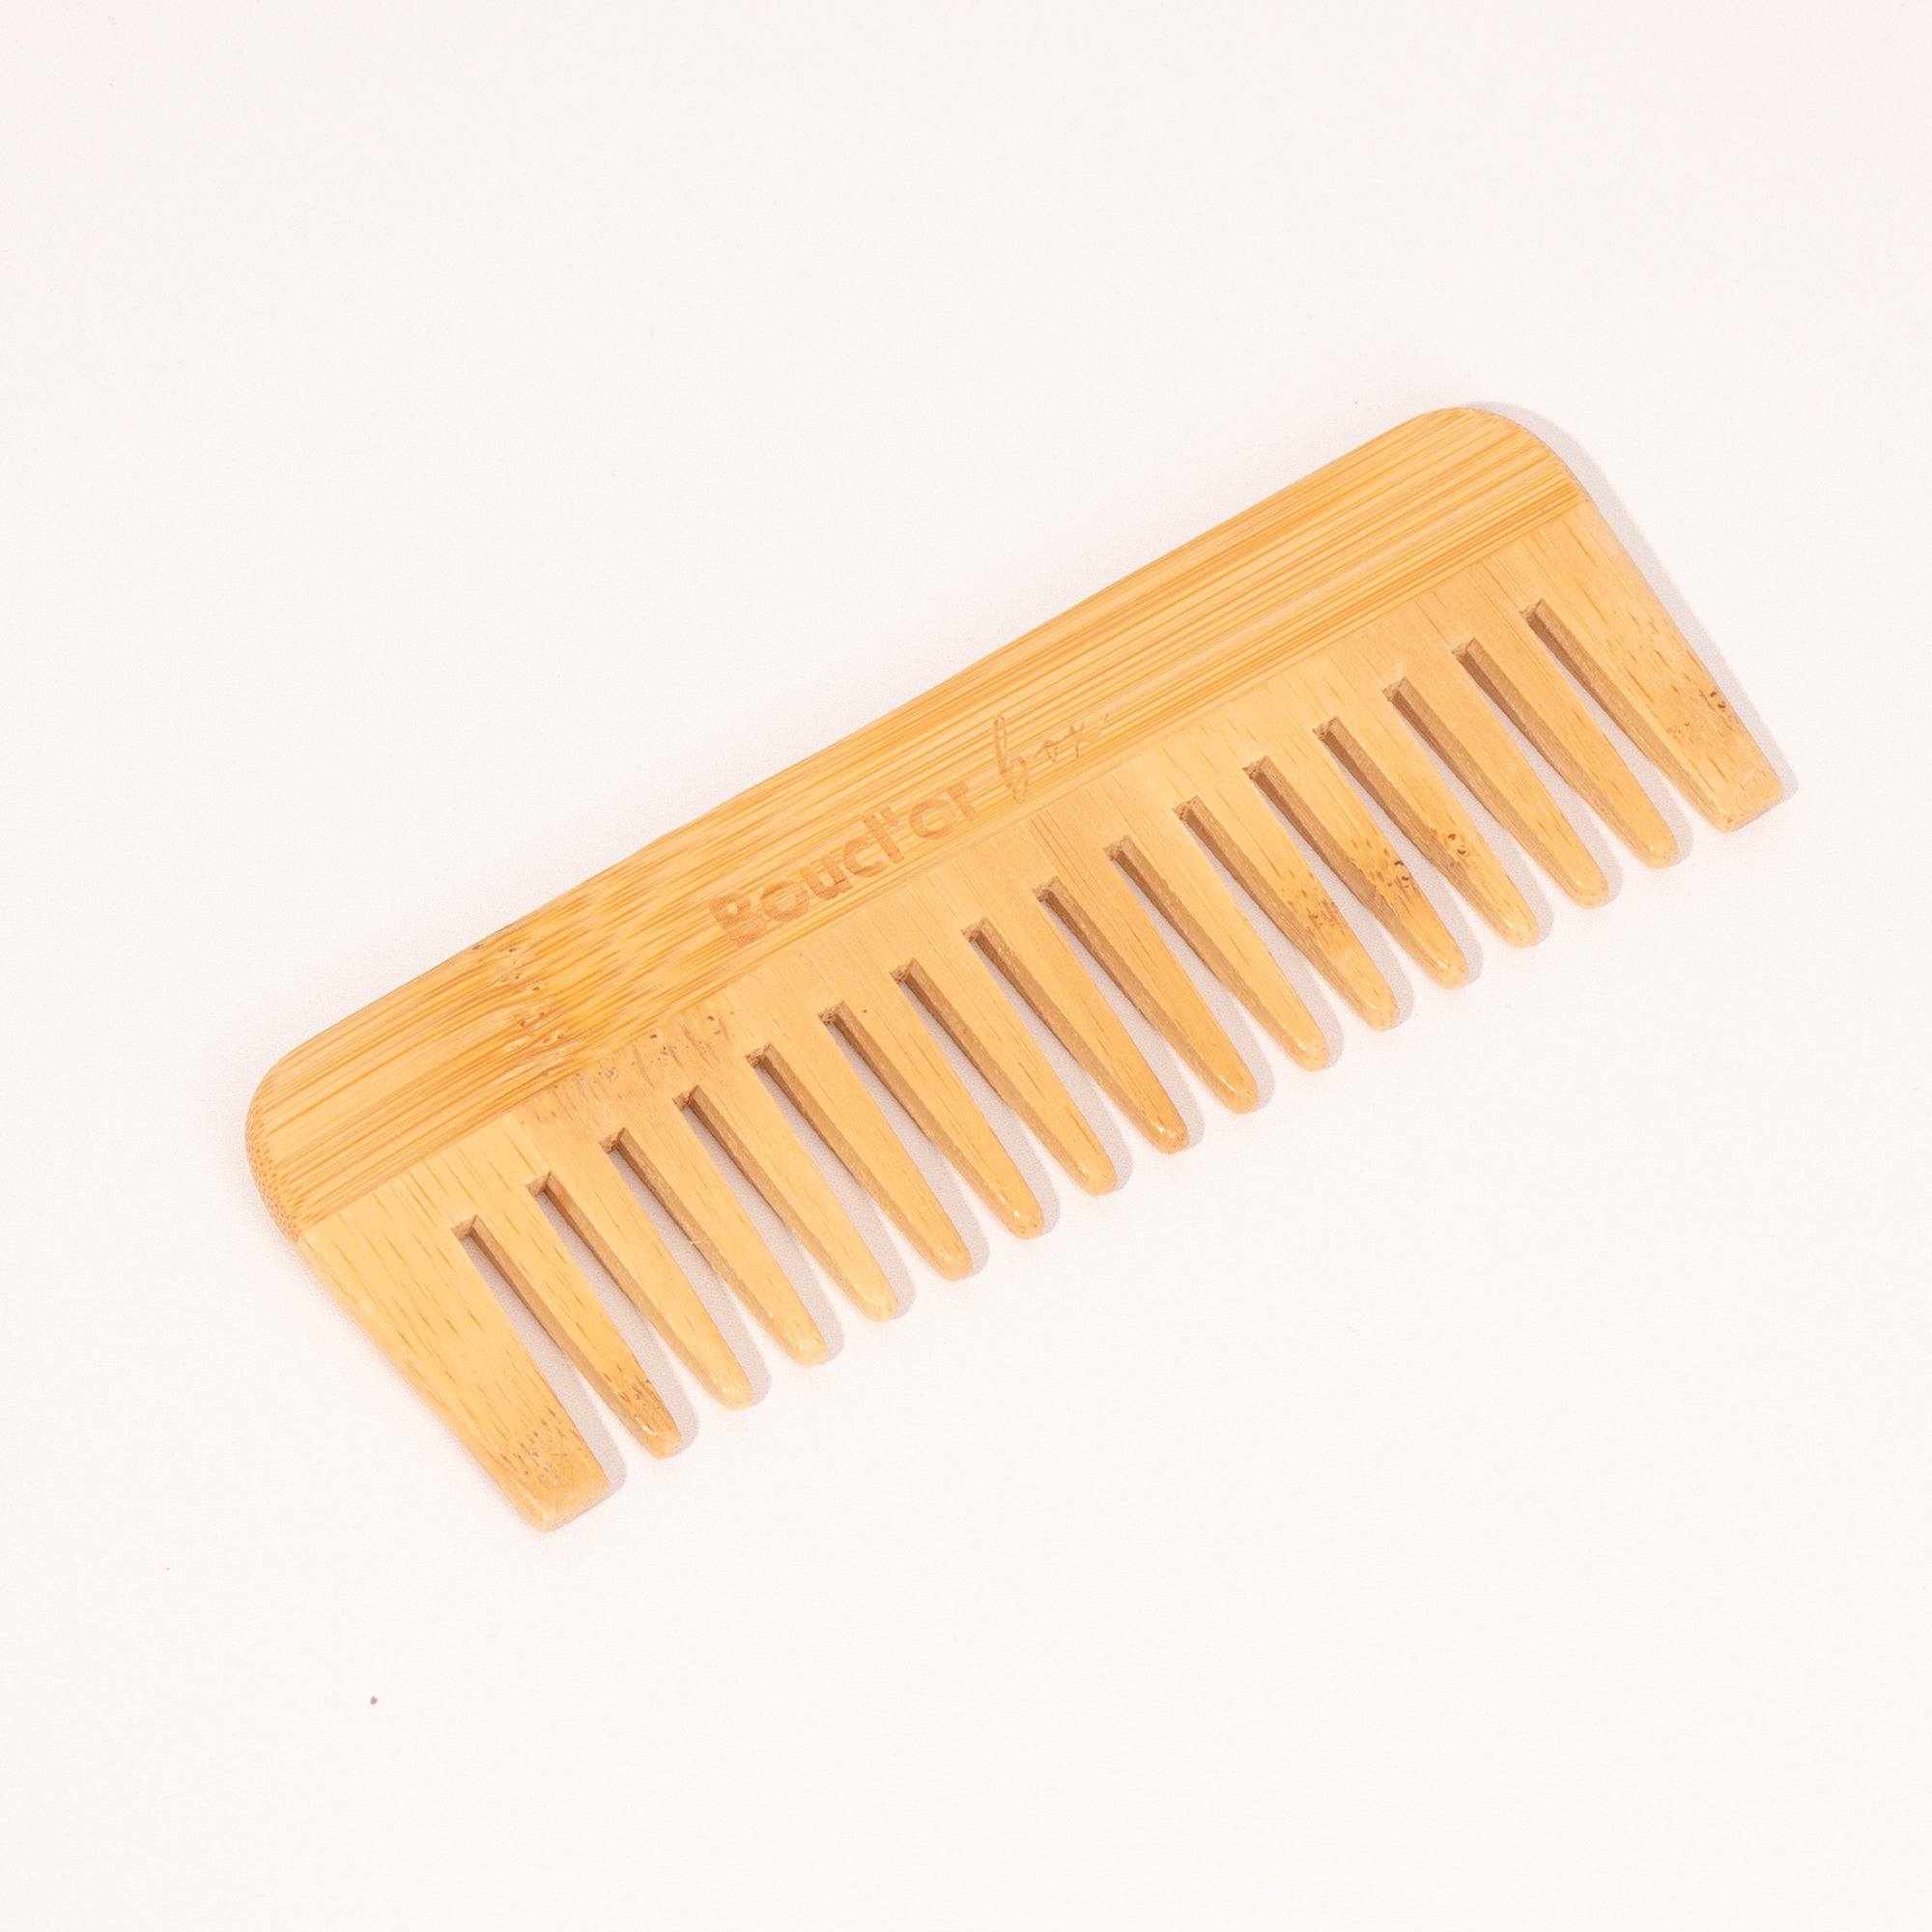 Peigne à dents larges en bois massif - Cheveux bouclés à crépus